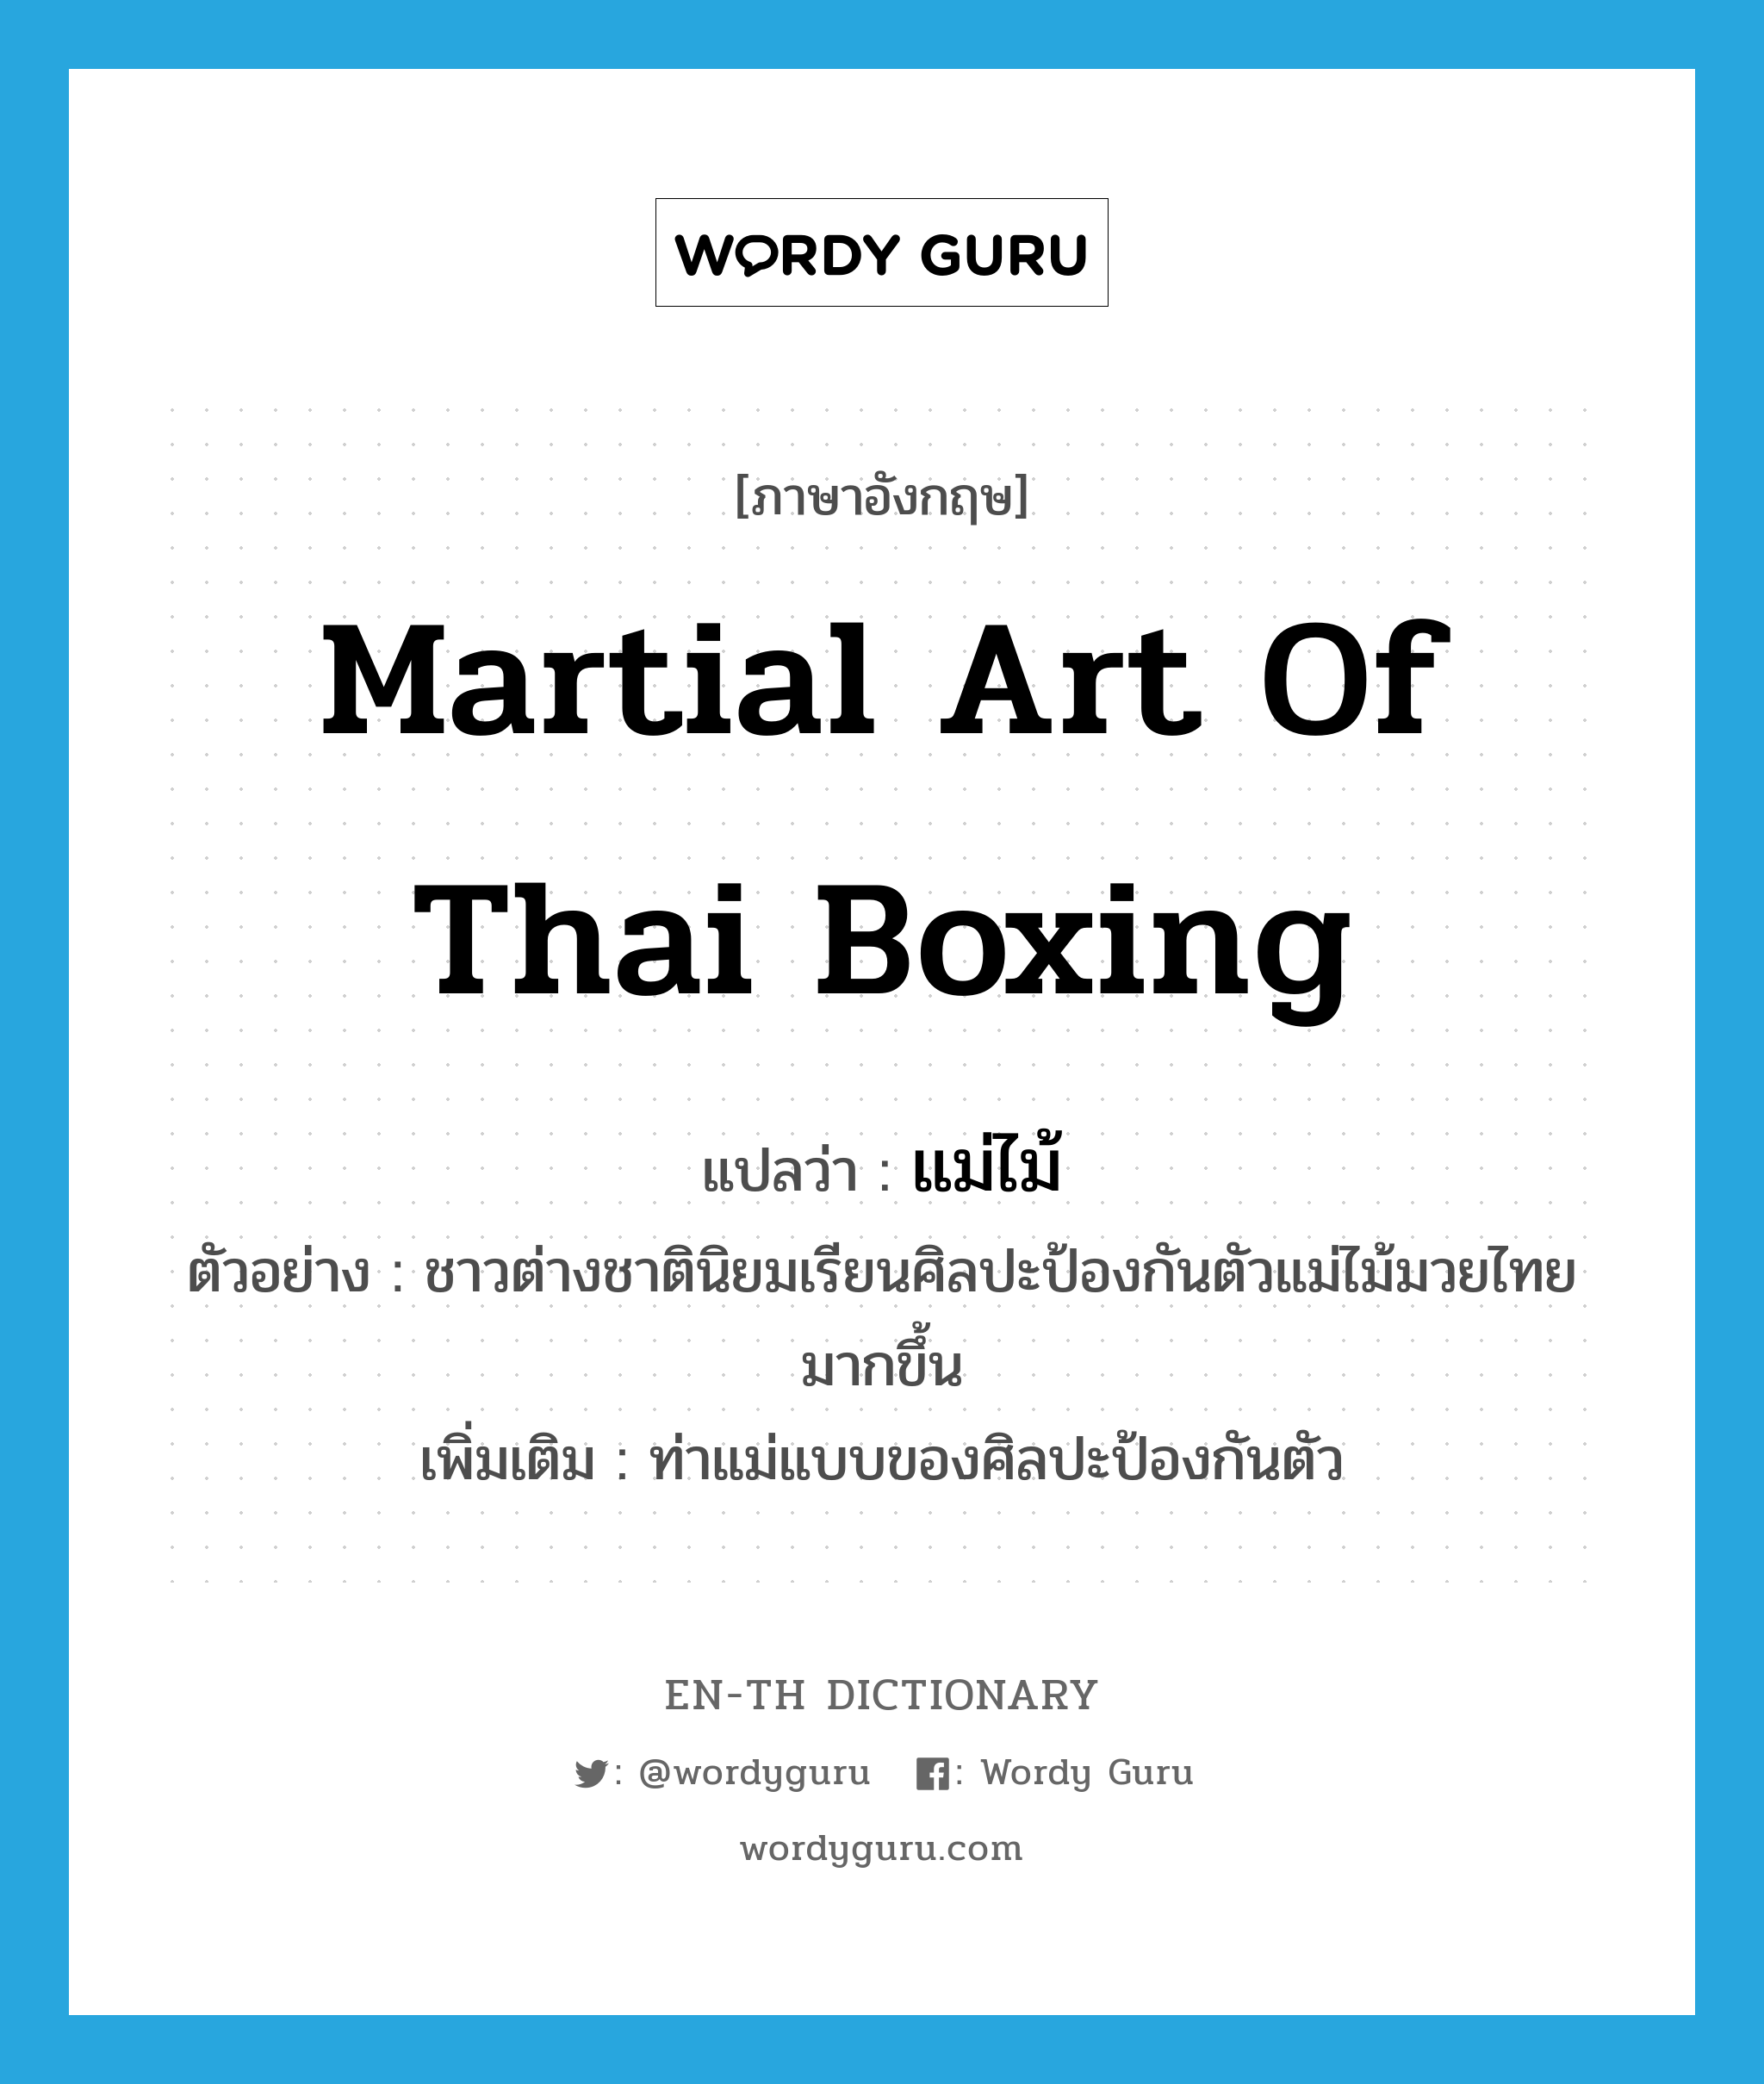 แม่ไม้ ภาษาอังกฤษ?, คำศัพท์ภาษาอังกฤษ แม่ไม้ แปลว่า martial art of Thai boxing ประเภท N ตัวอย่าง ชาวต่างชาตินิยมเรียนศิลปะป้องกันตัวแม่ไม้มวยไทยมากขึ้น เพิ่มเติม ท่าแม่แบบของศิลปะป้องกันตัว หมวด N